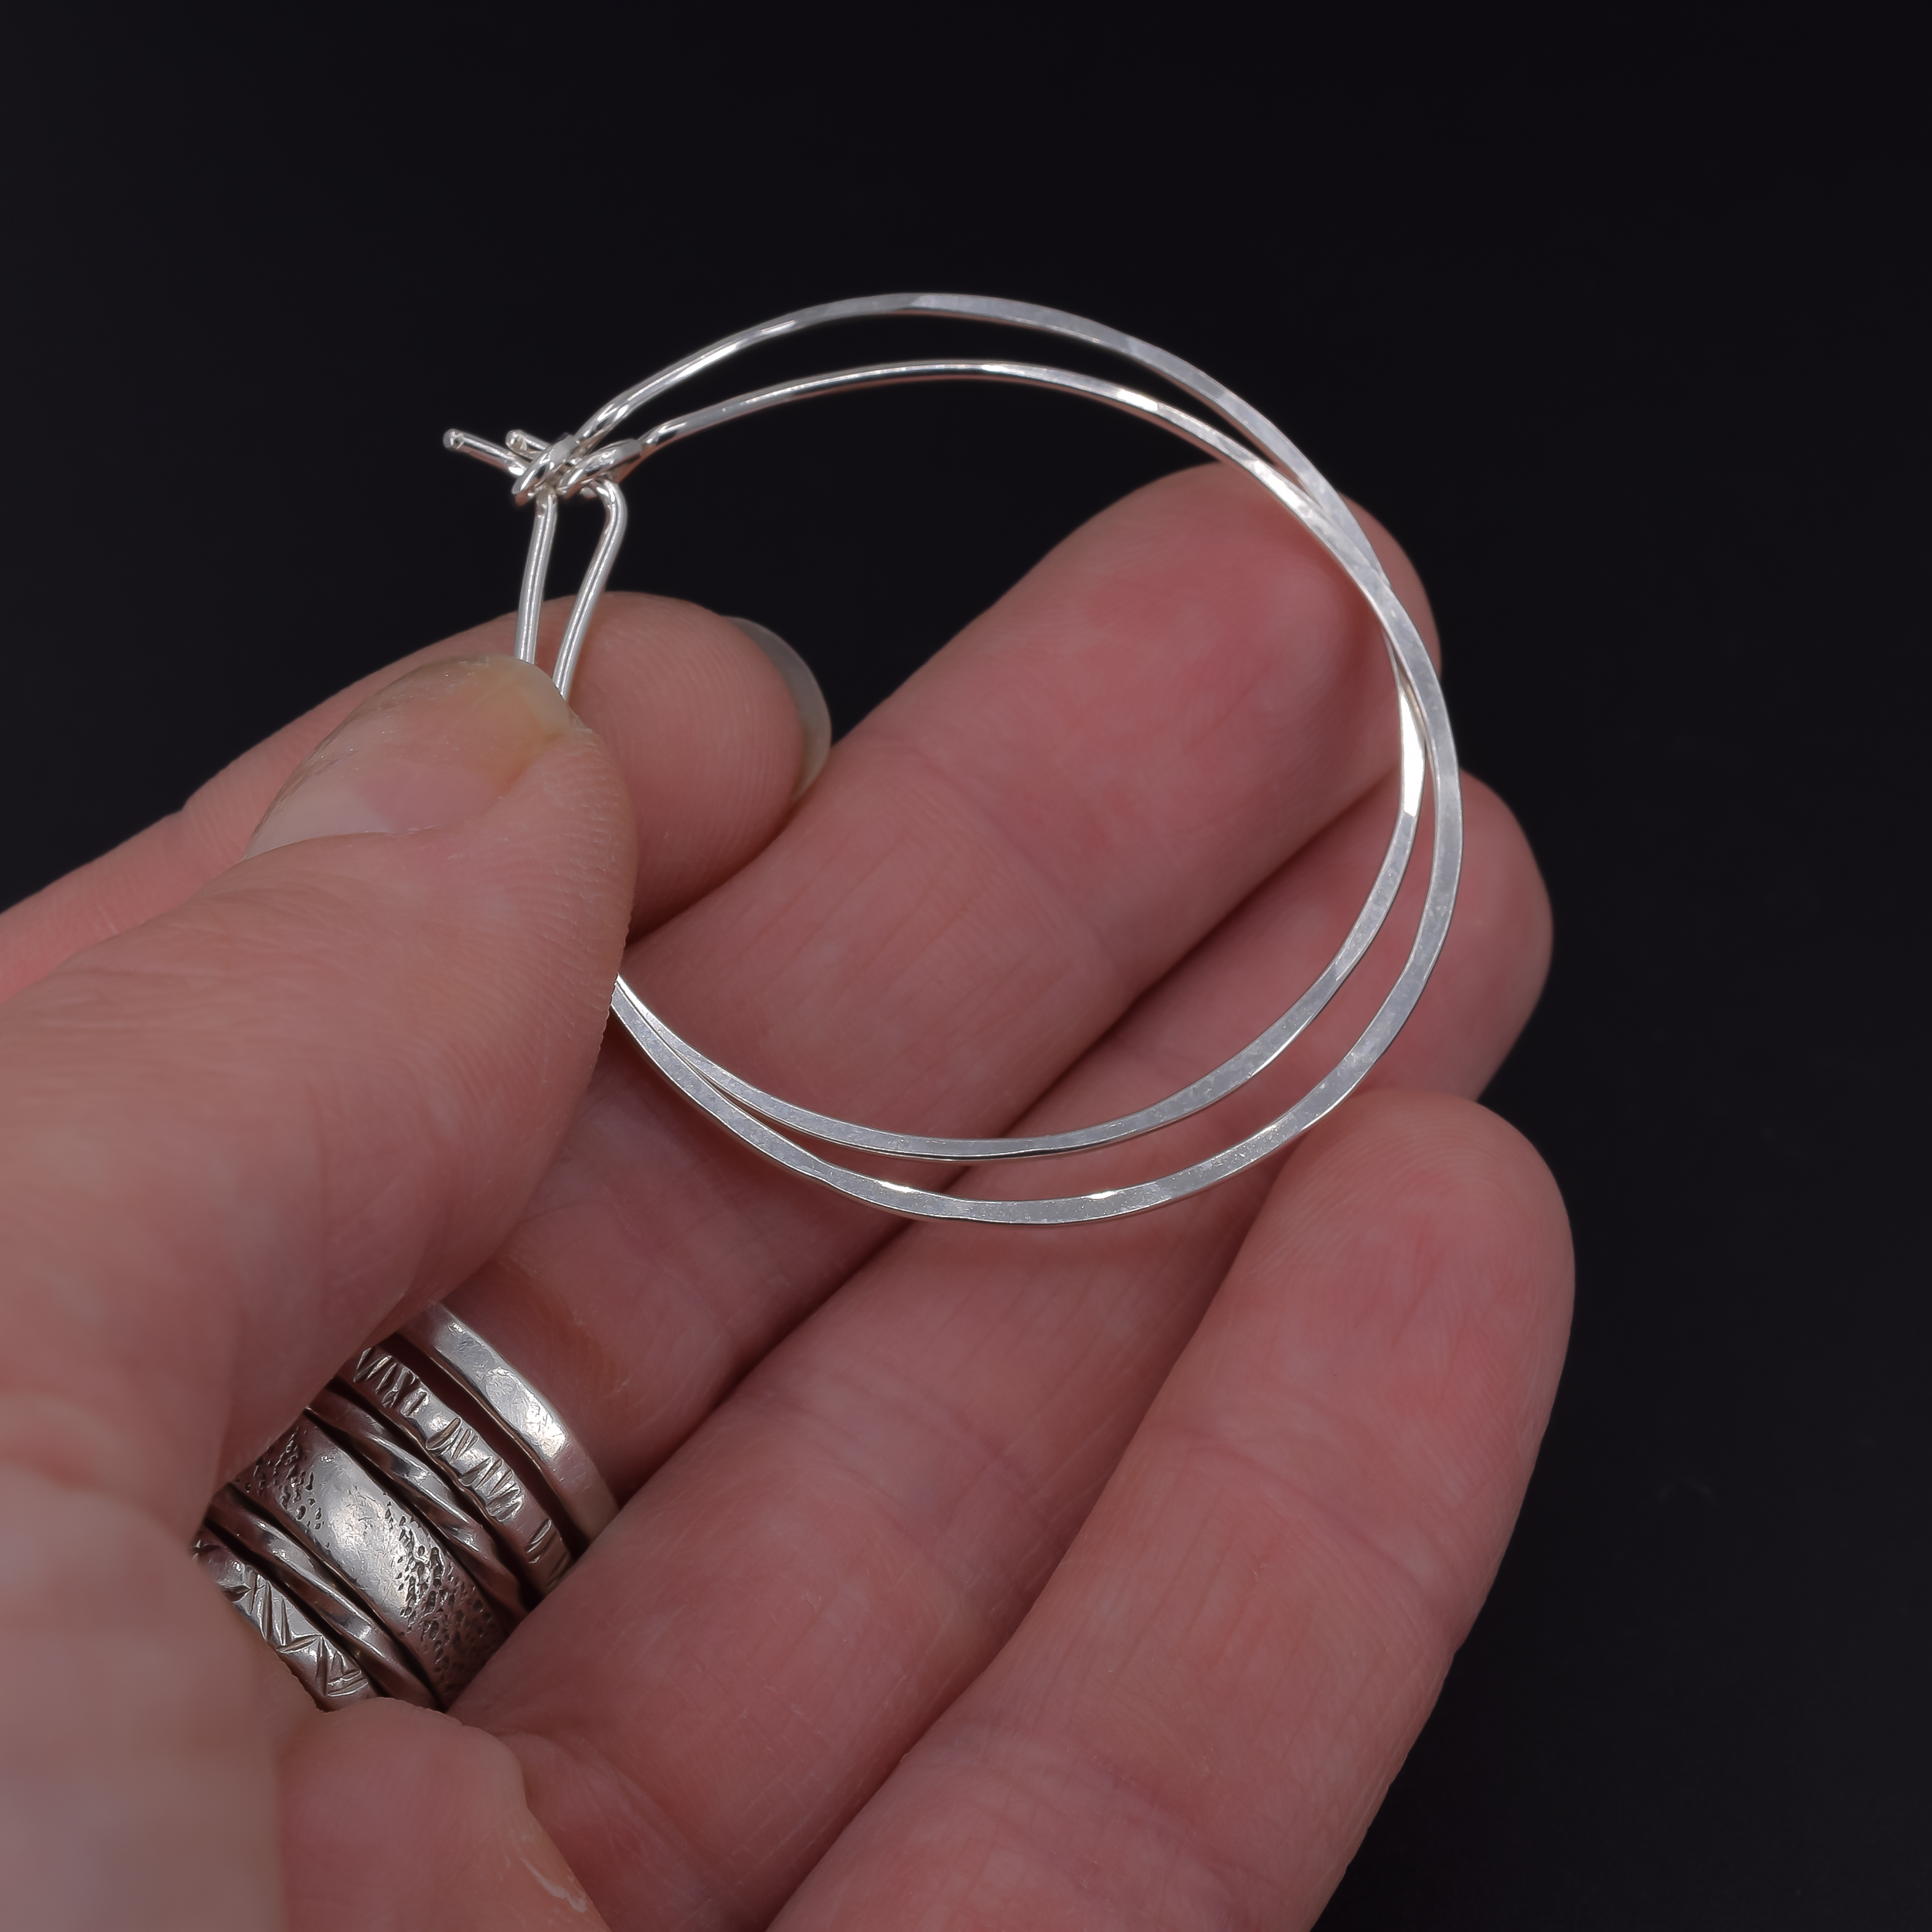 Medium 1.5 inch sterling silver hoop earrings shown in hand